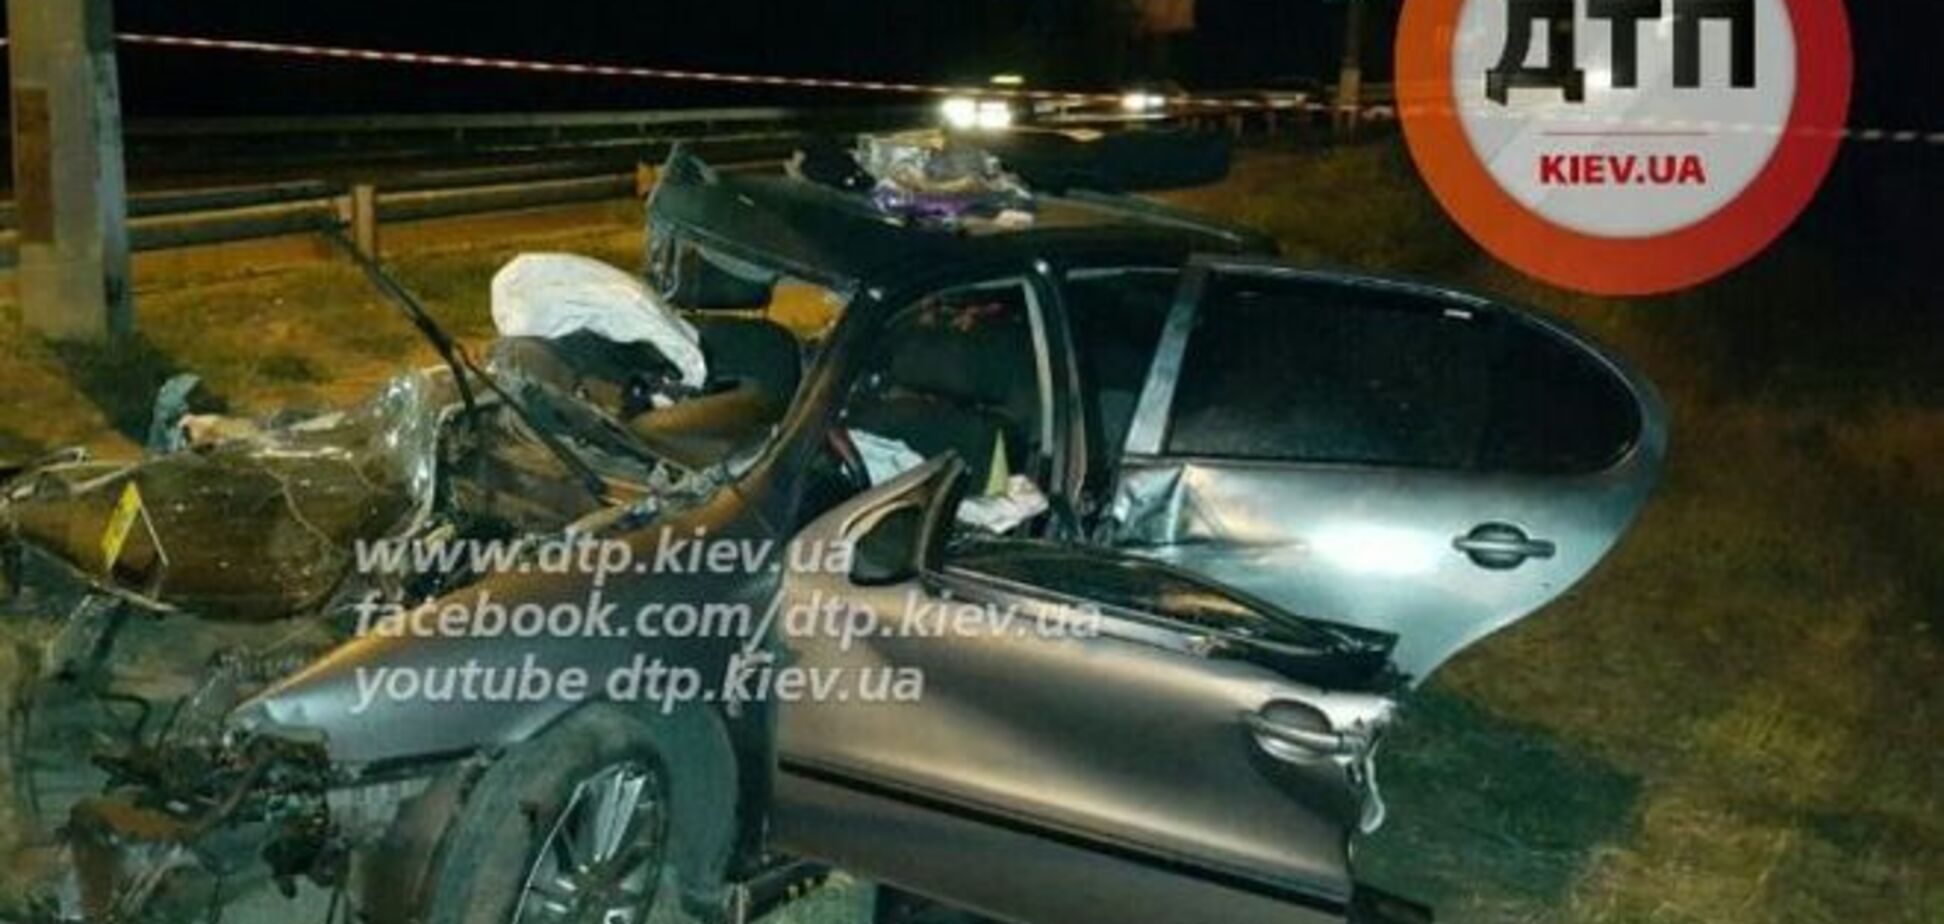 Смертельное ДТП в Киеве: автомобиль врезался в столб